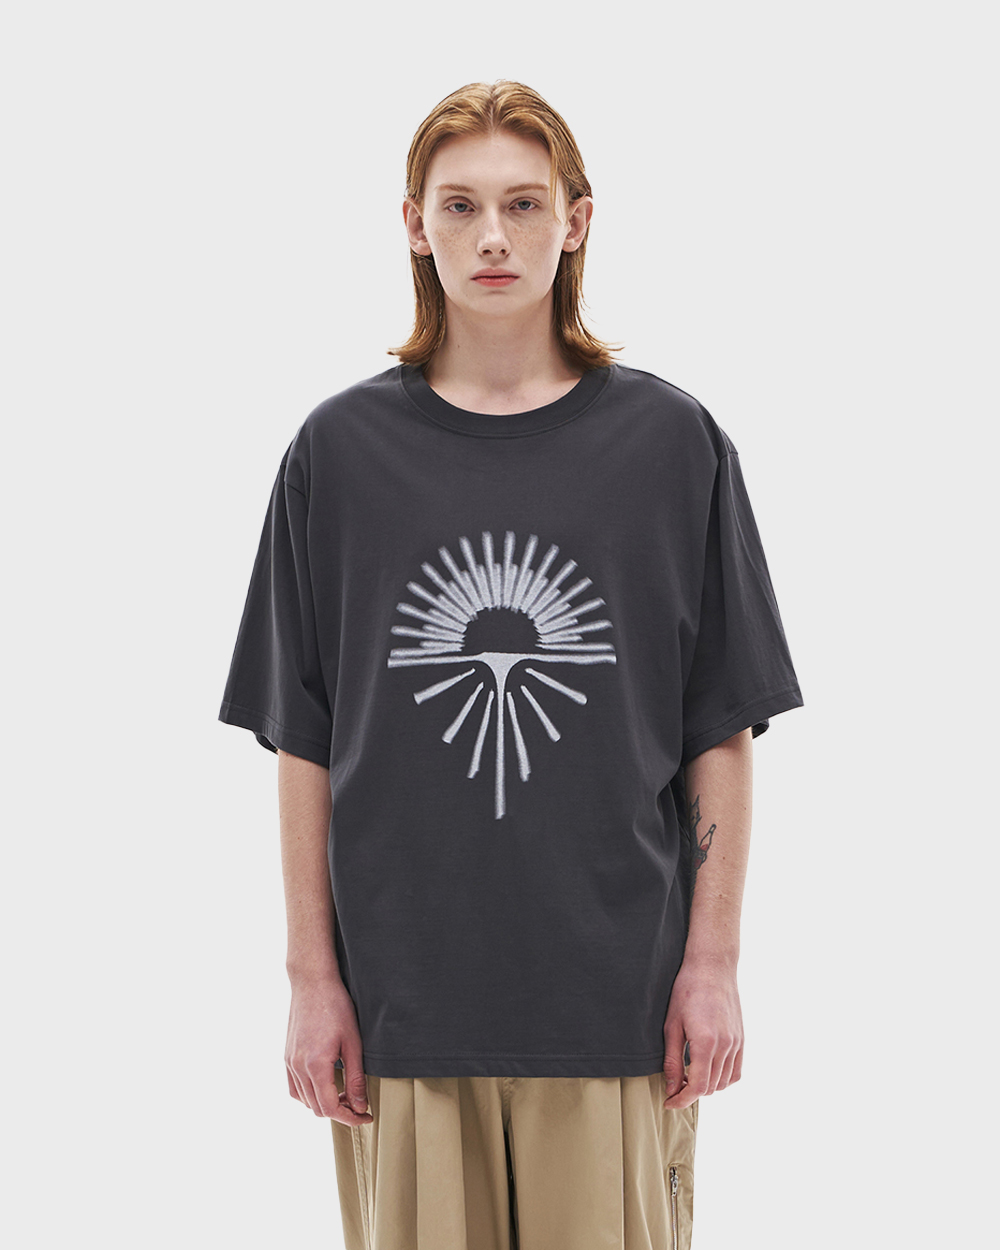 노운 Sunrise tee shirts (Charcoal)